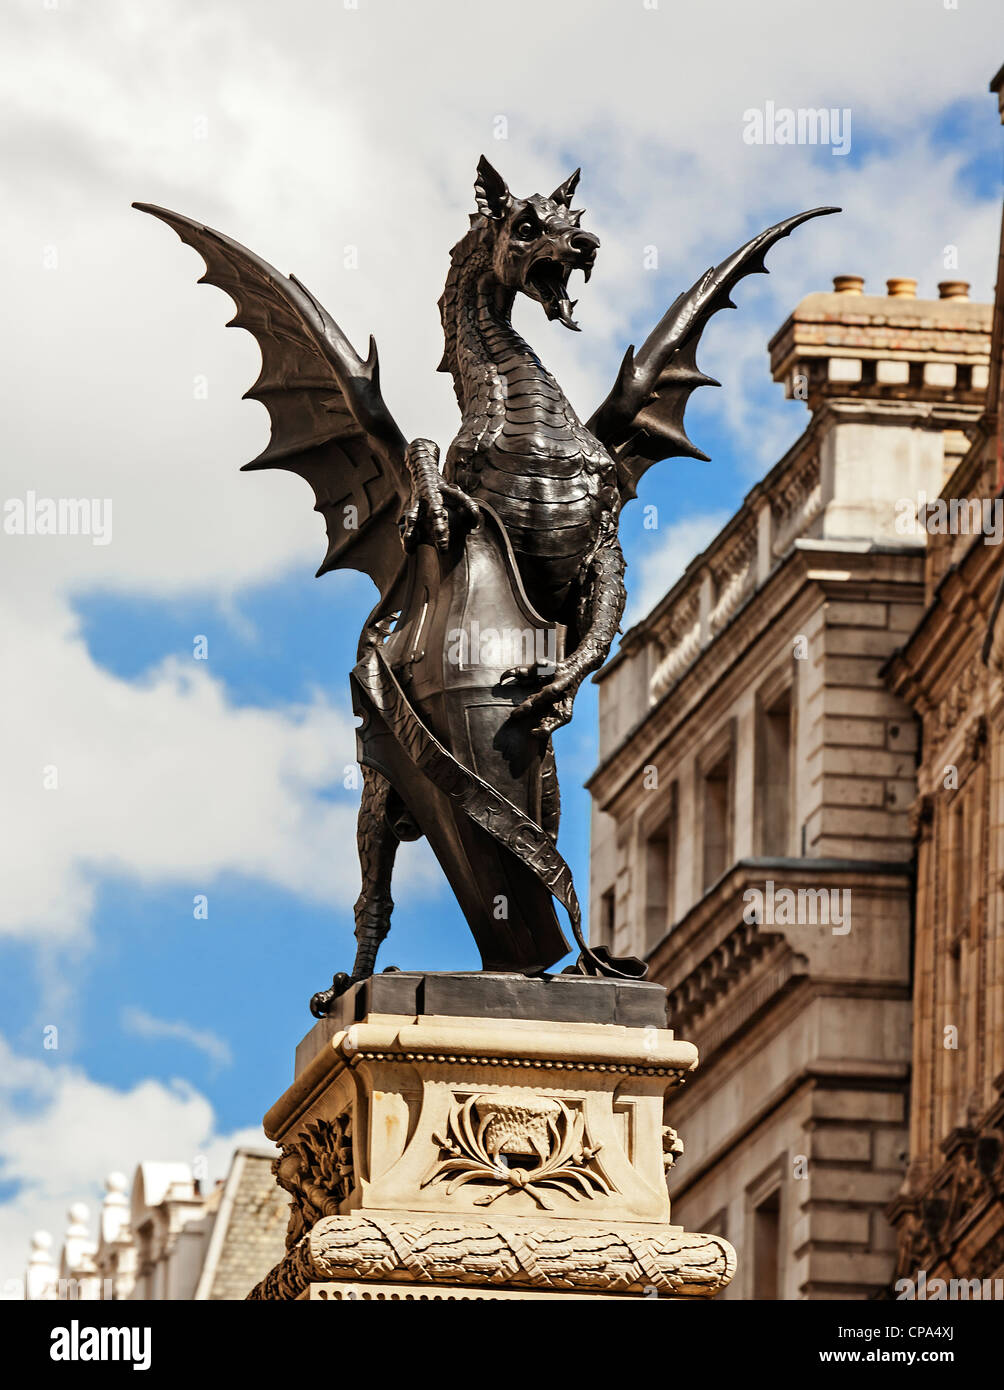 Dragón o Griffin en la cima del monumento de Temple Bar, en el límite entre Westminster y la ciudad de Londres, Inglaterra. Foto de stock